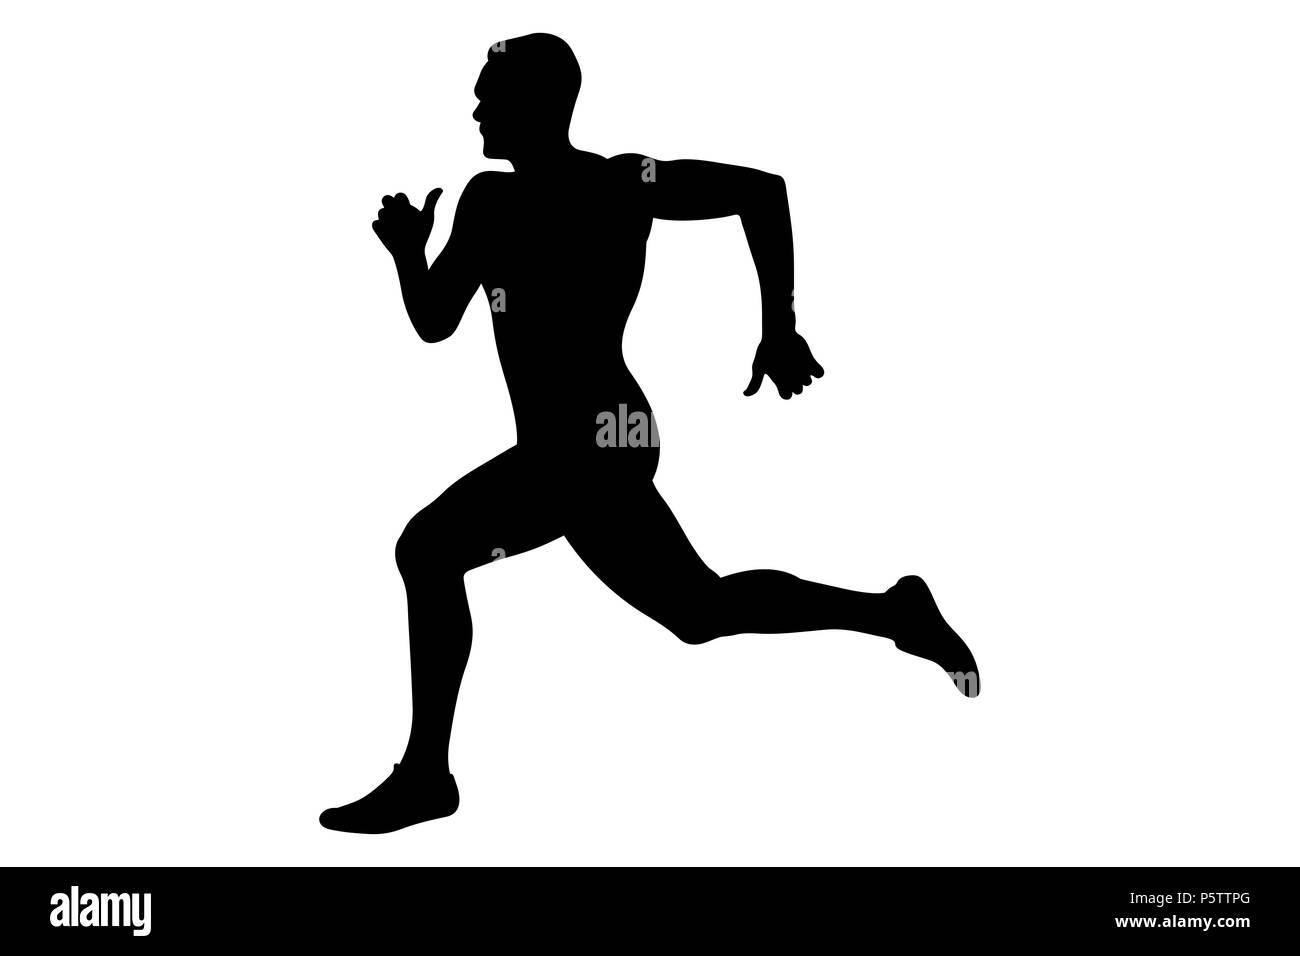 Homme runner sprinter silhouette noire la concurrence dans l'athlétisme Banque D'Images